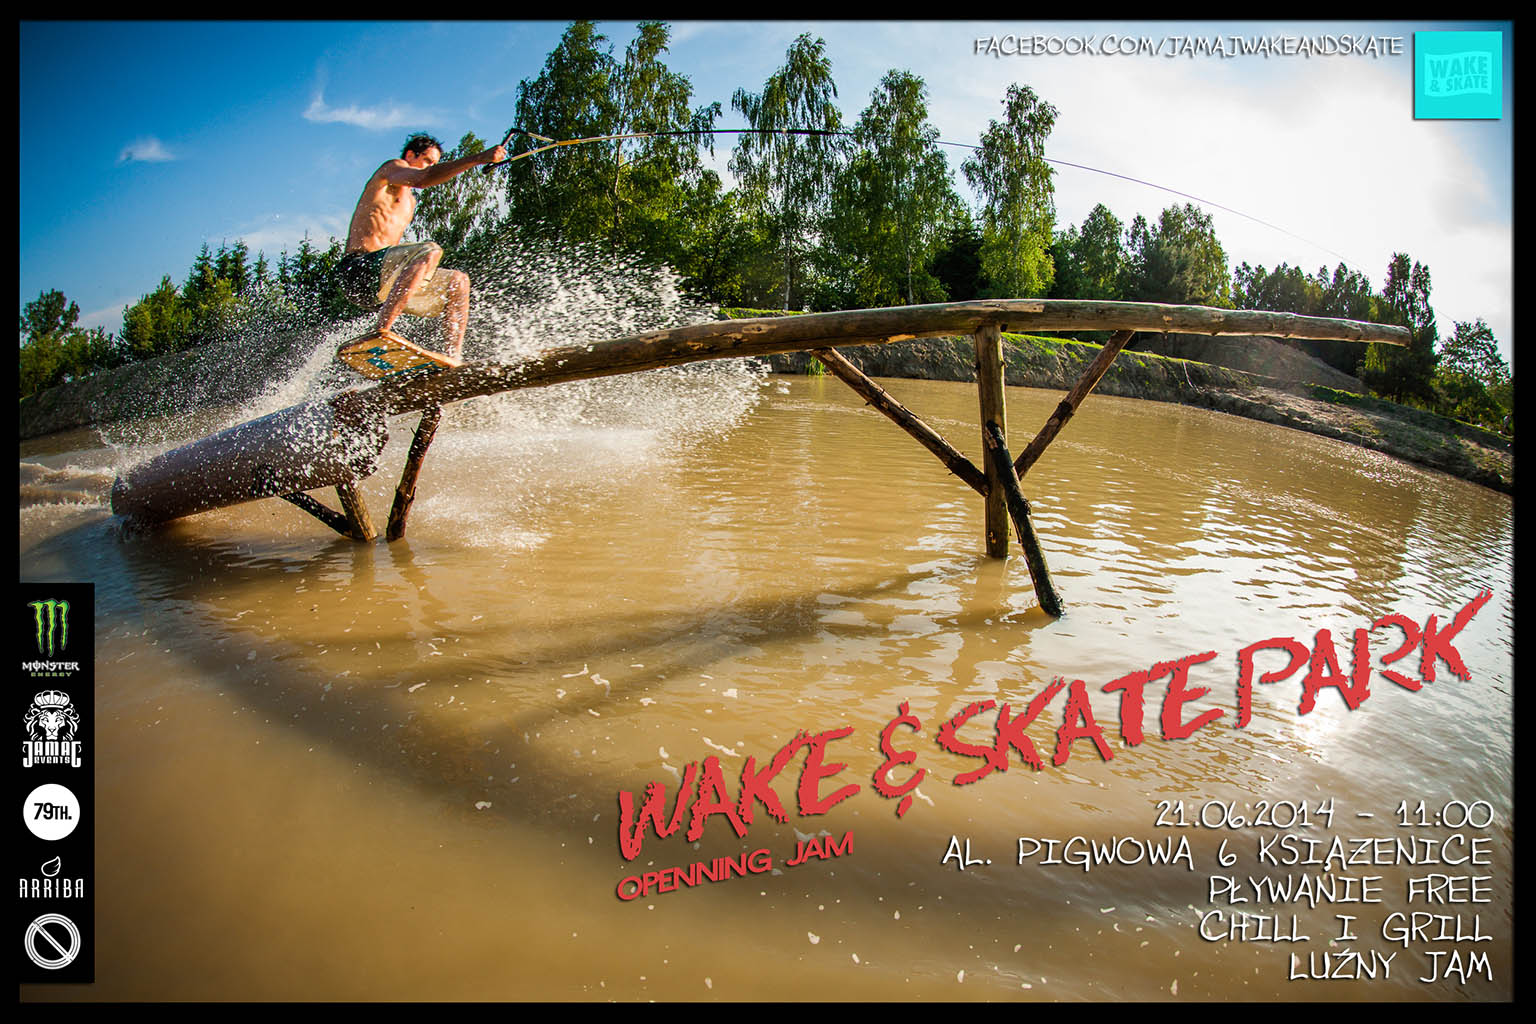 Wake&Skate Open